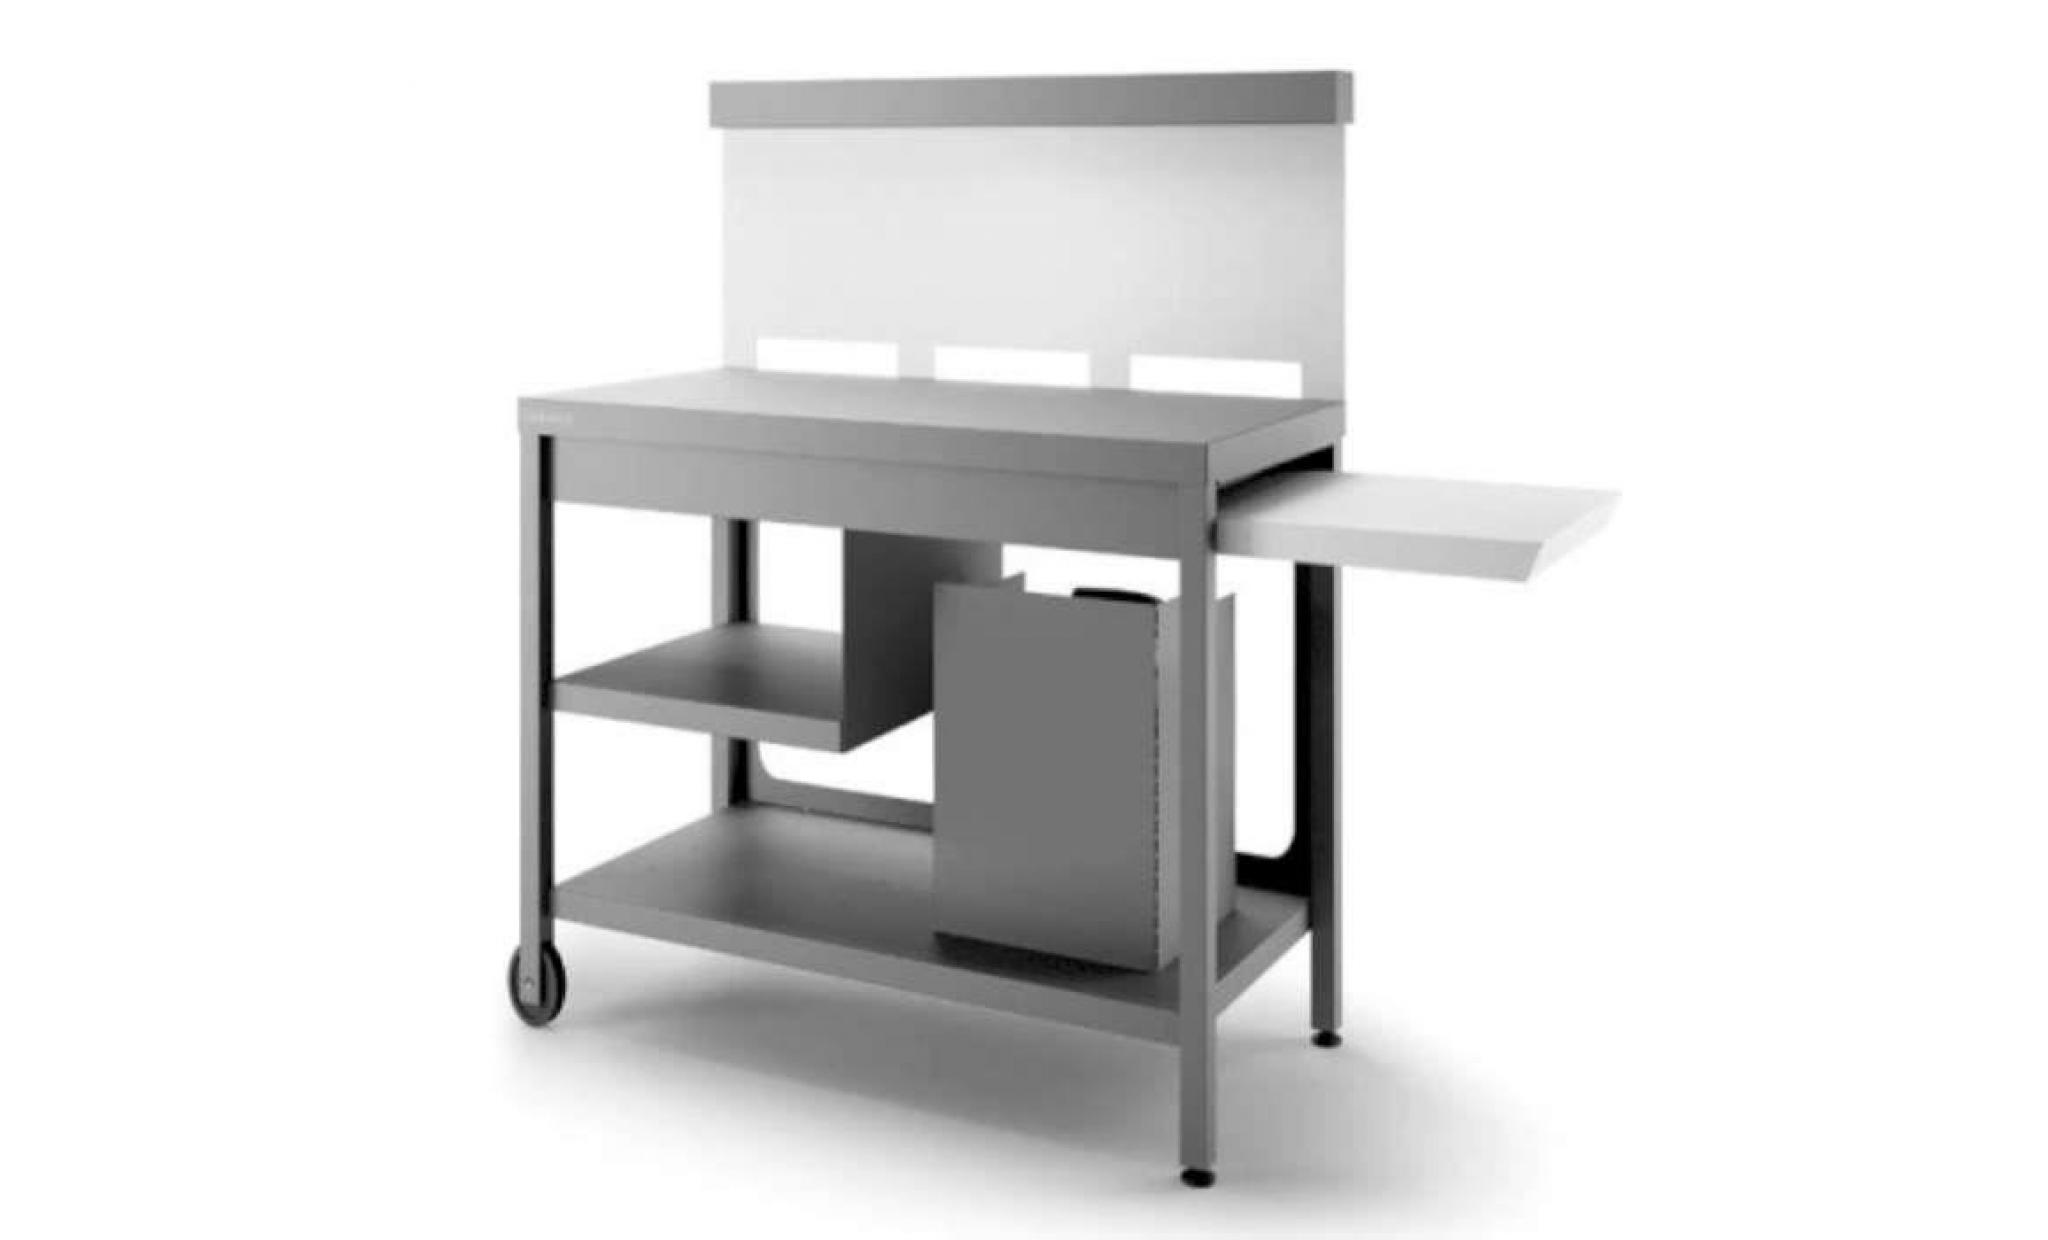 table roulante credence acier gris anthracite/ blanc mat pour plancha